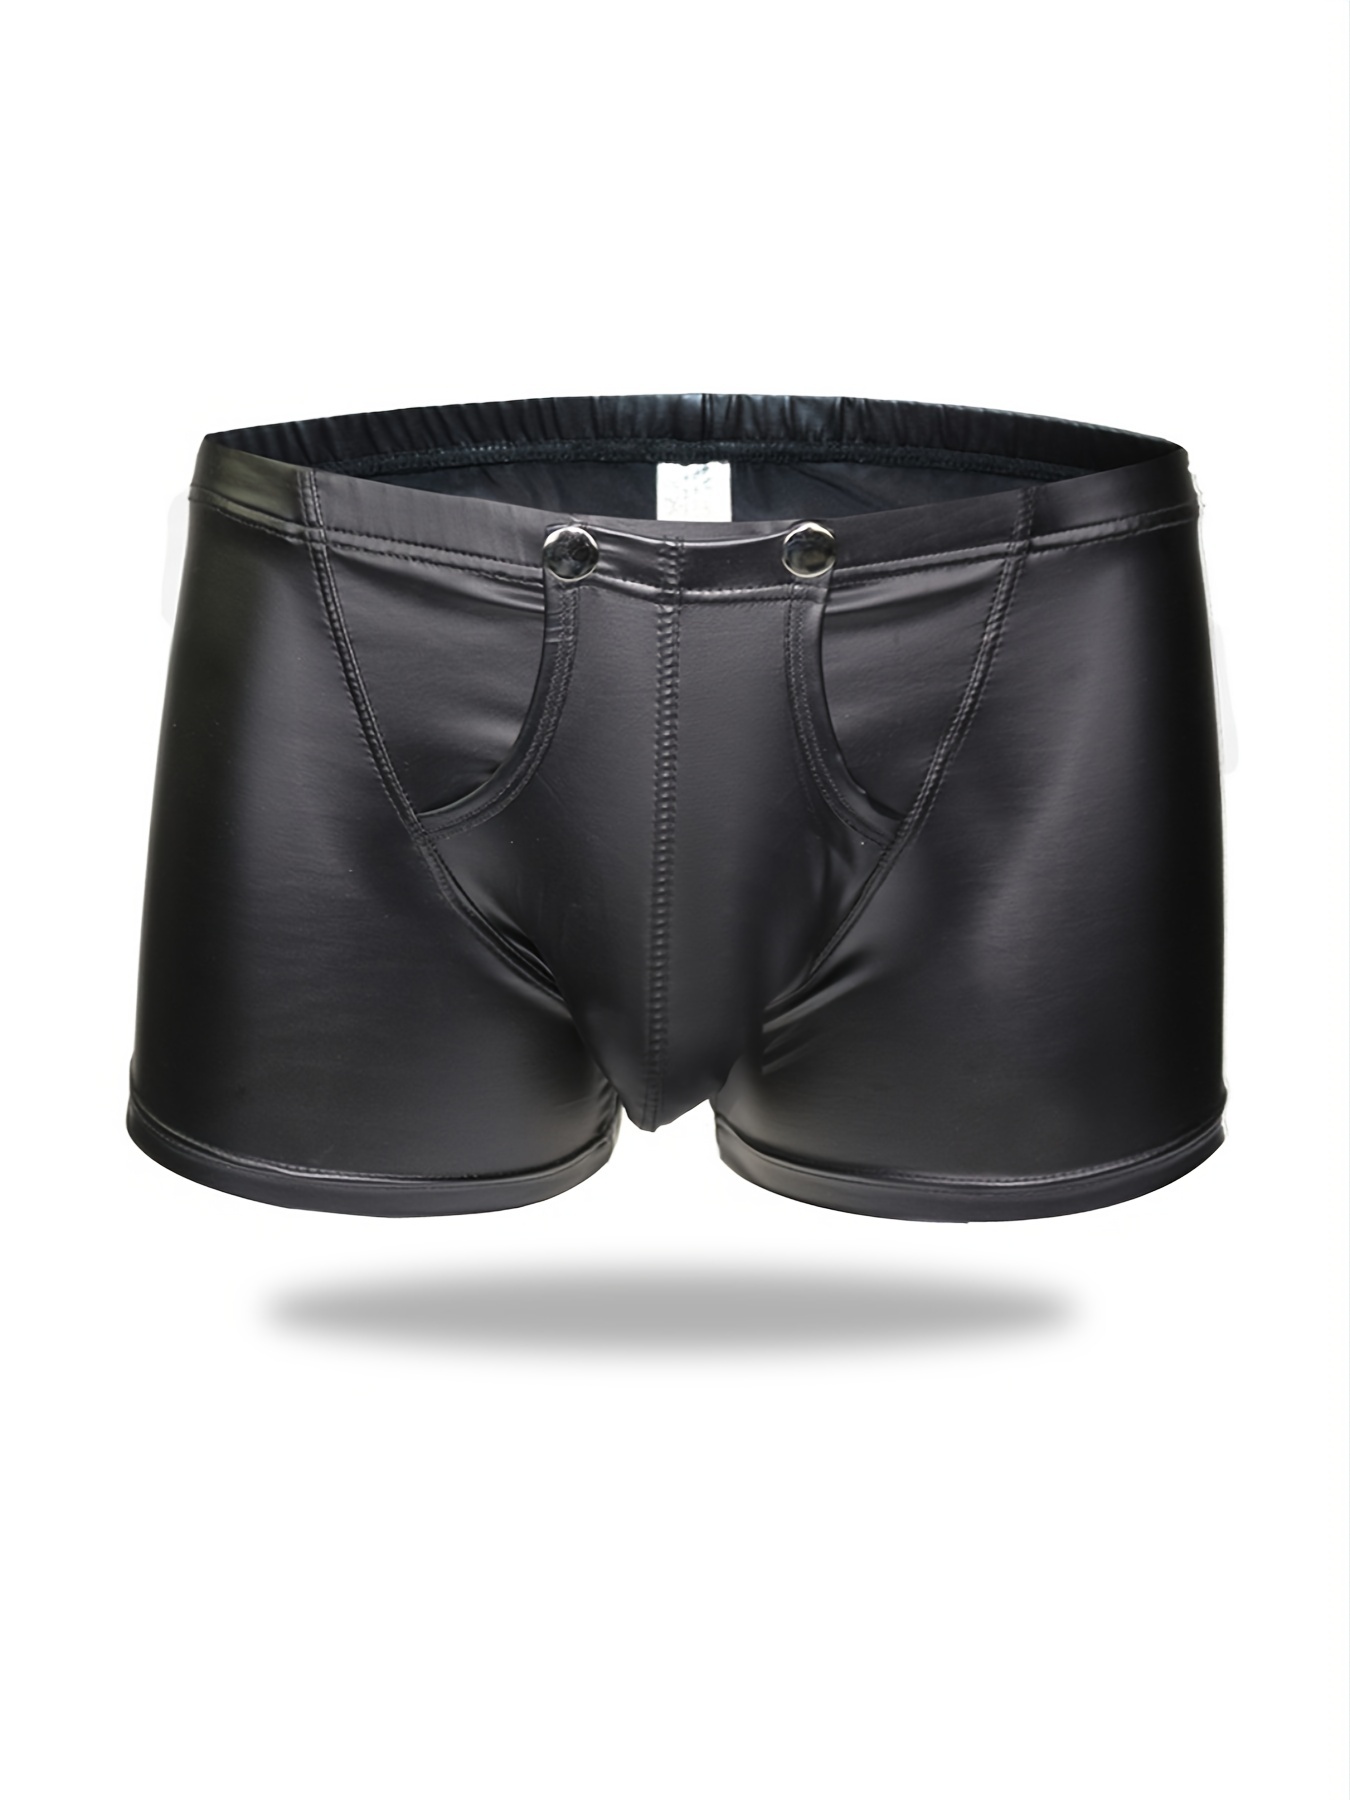 Capreze Mens Boxer Briefs with Hidden Zipper Pocket Comfy Breathable Low  Rise Underwear(3 Pack) 